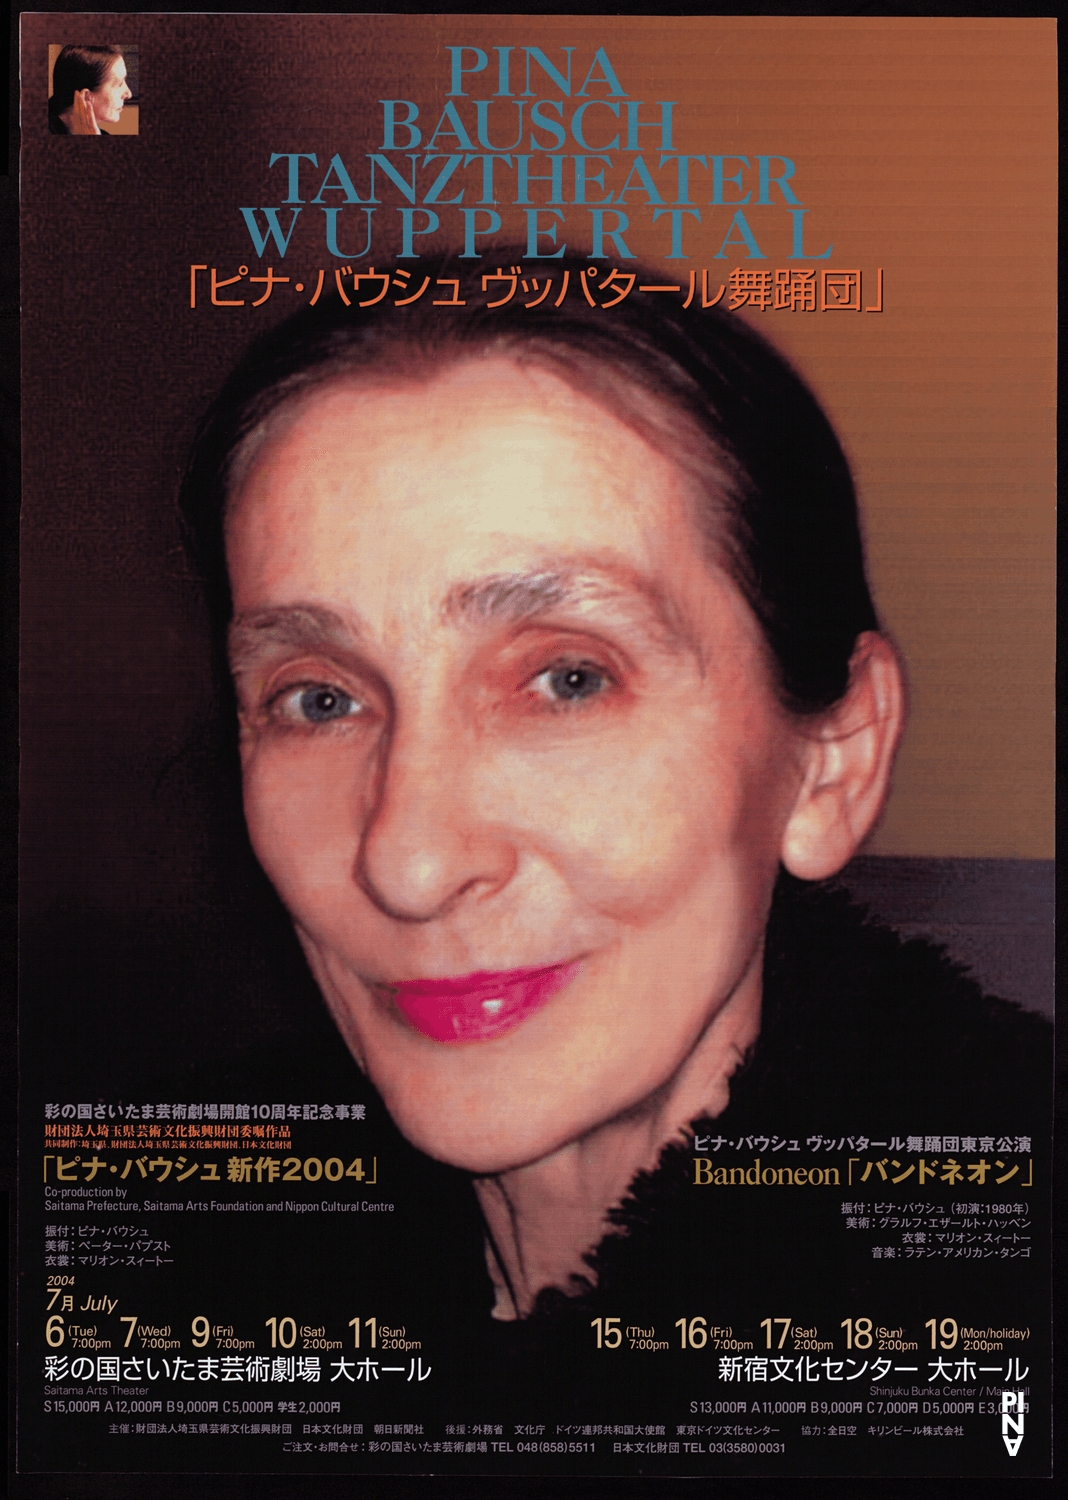 Affiche de « Bandonéon » et « Ten Chi » de Pina Bausch à Tokyo et Saitama, 6 juil. 2004 – 19 juil. 2004